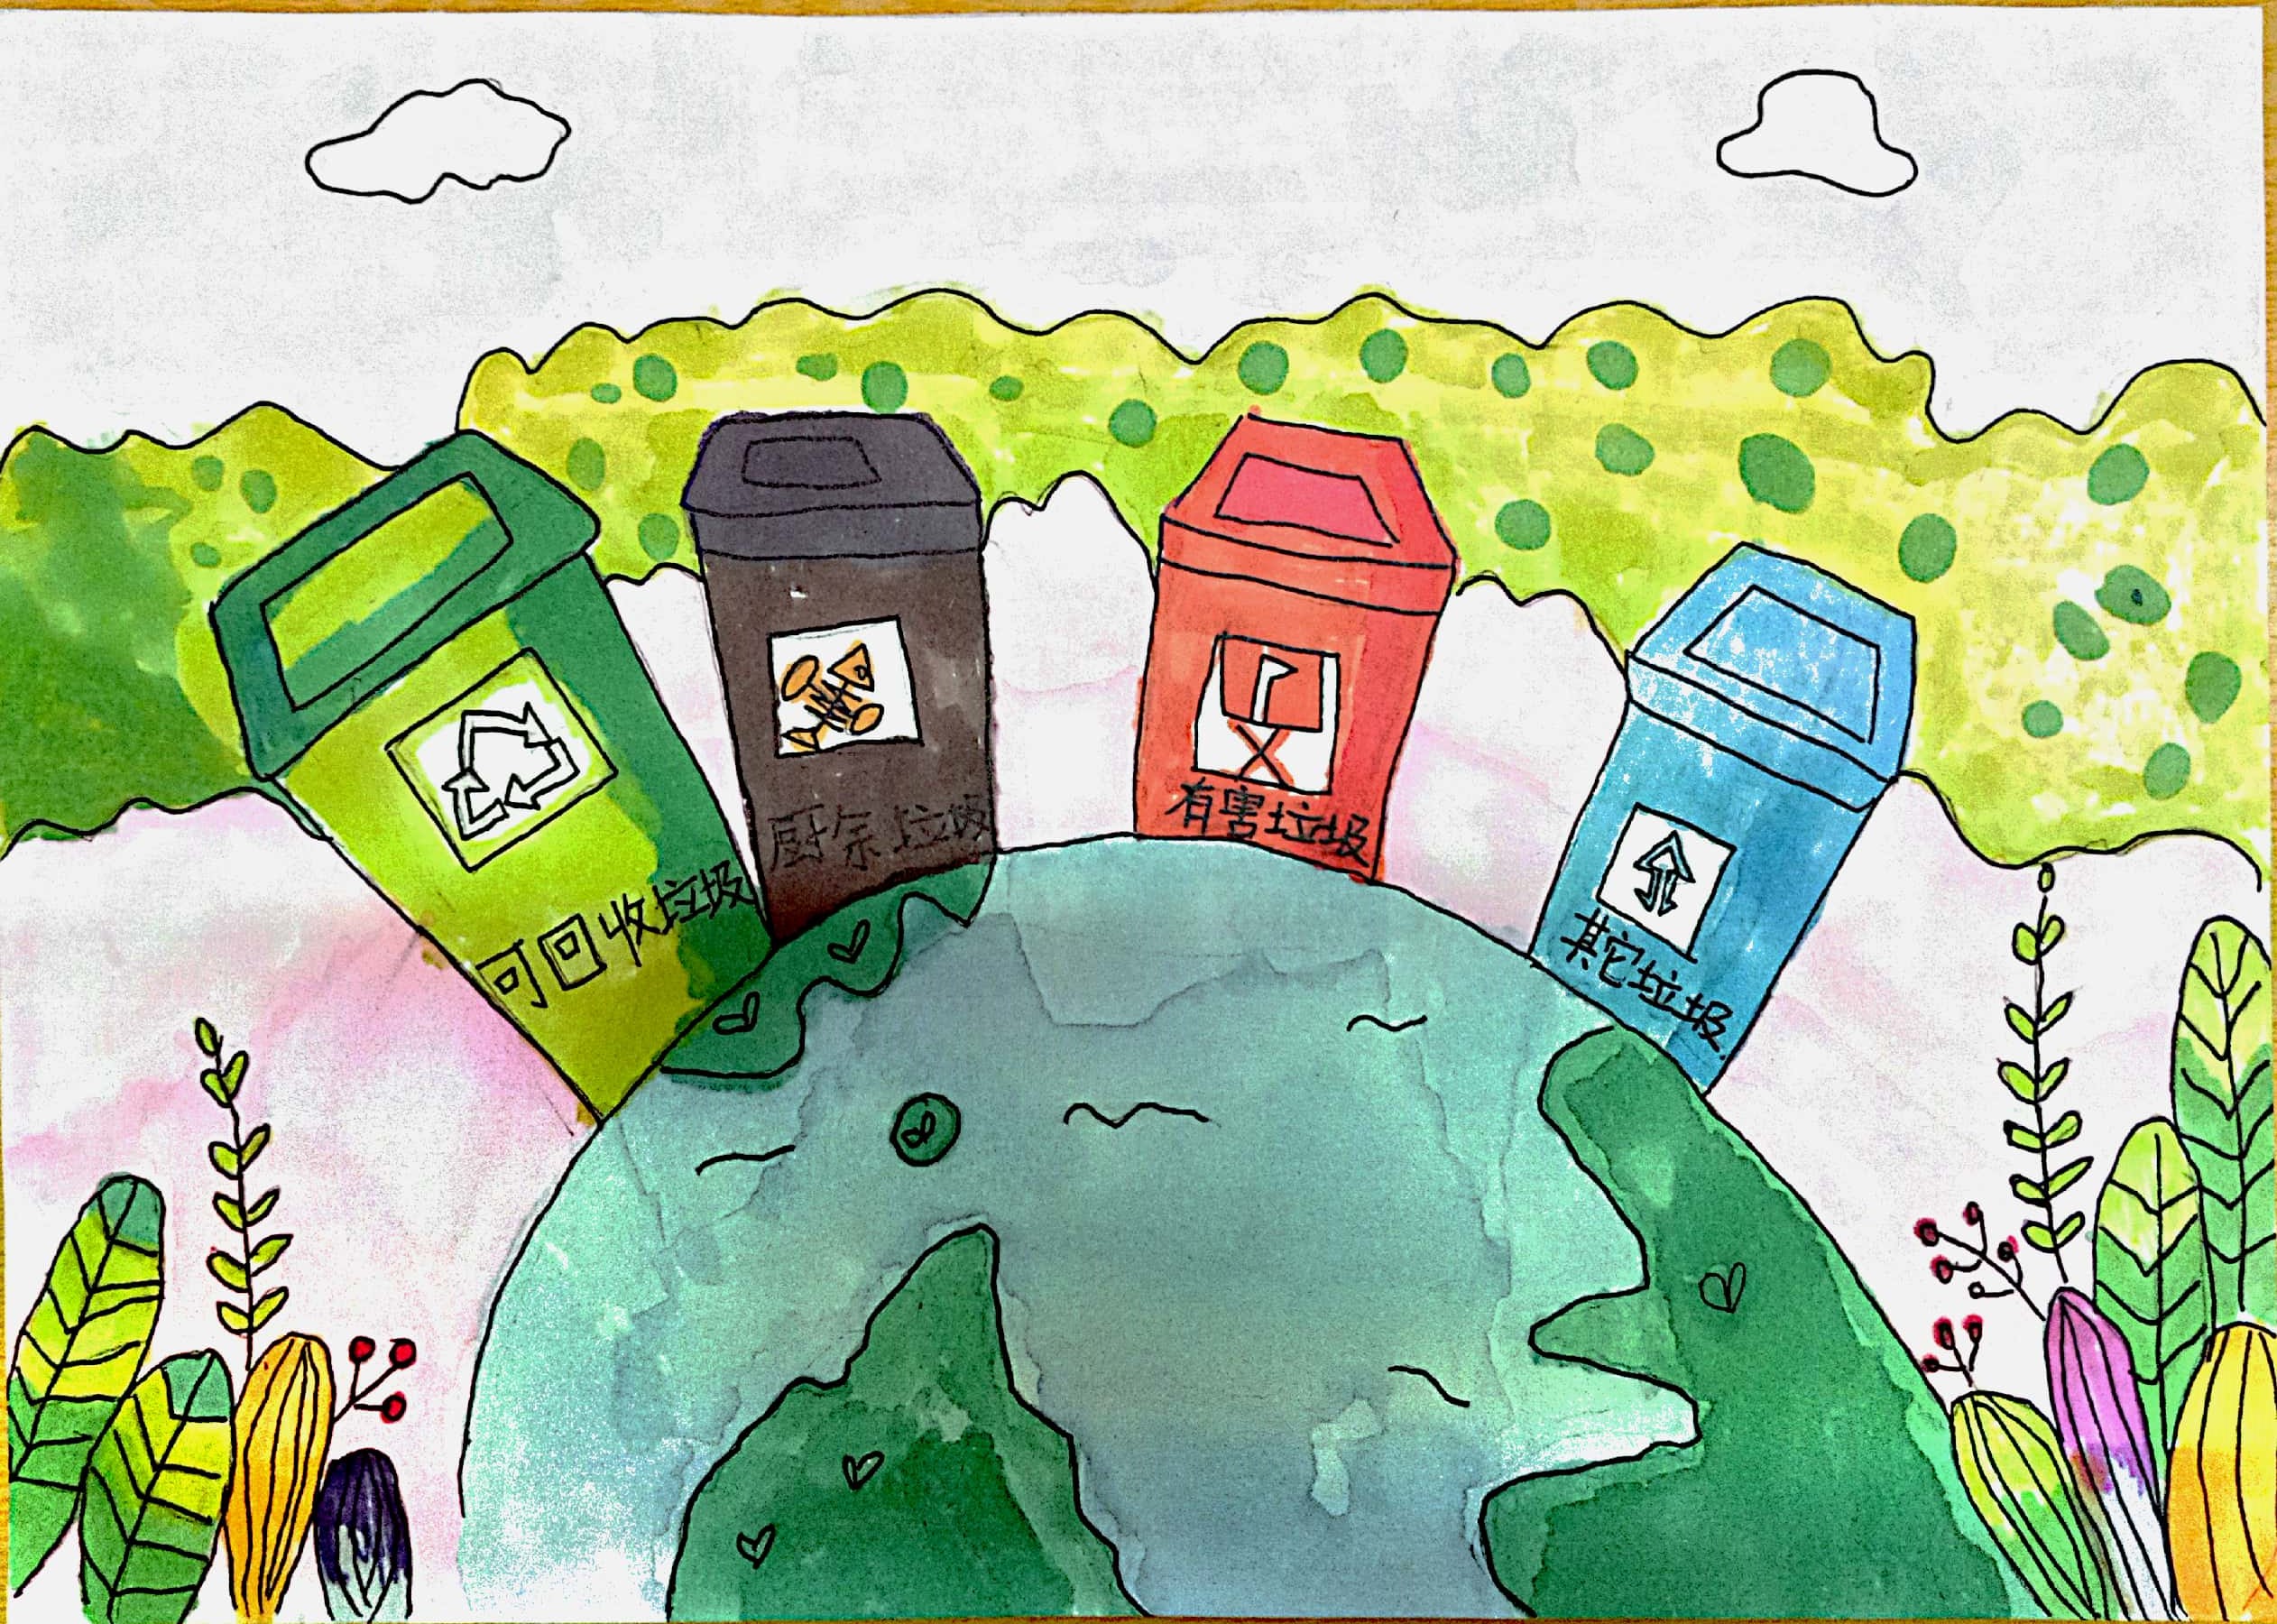 “全国中小学生环保绘画大赛”结果出炉 -环保频道